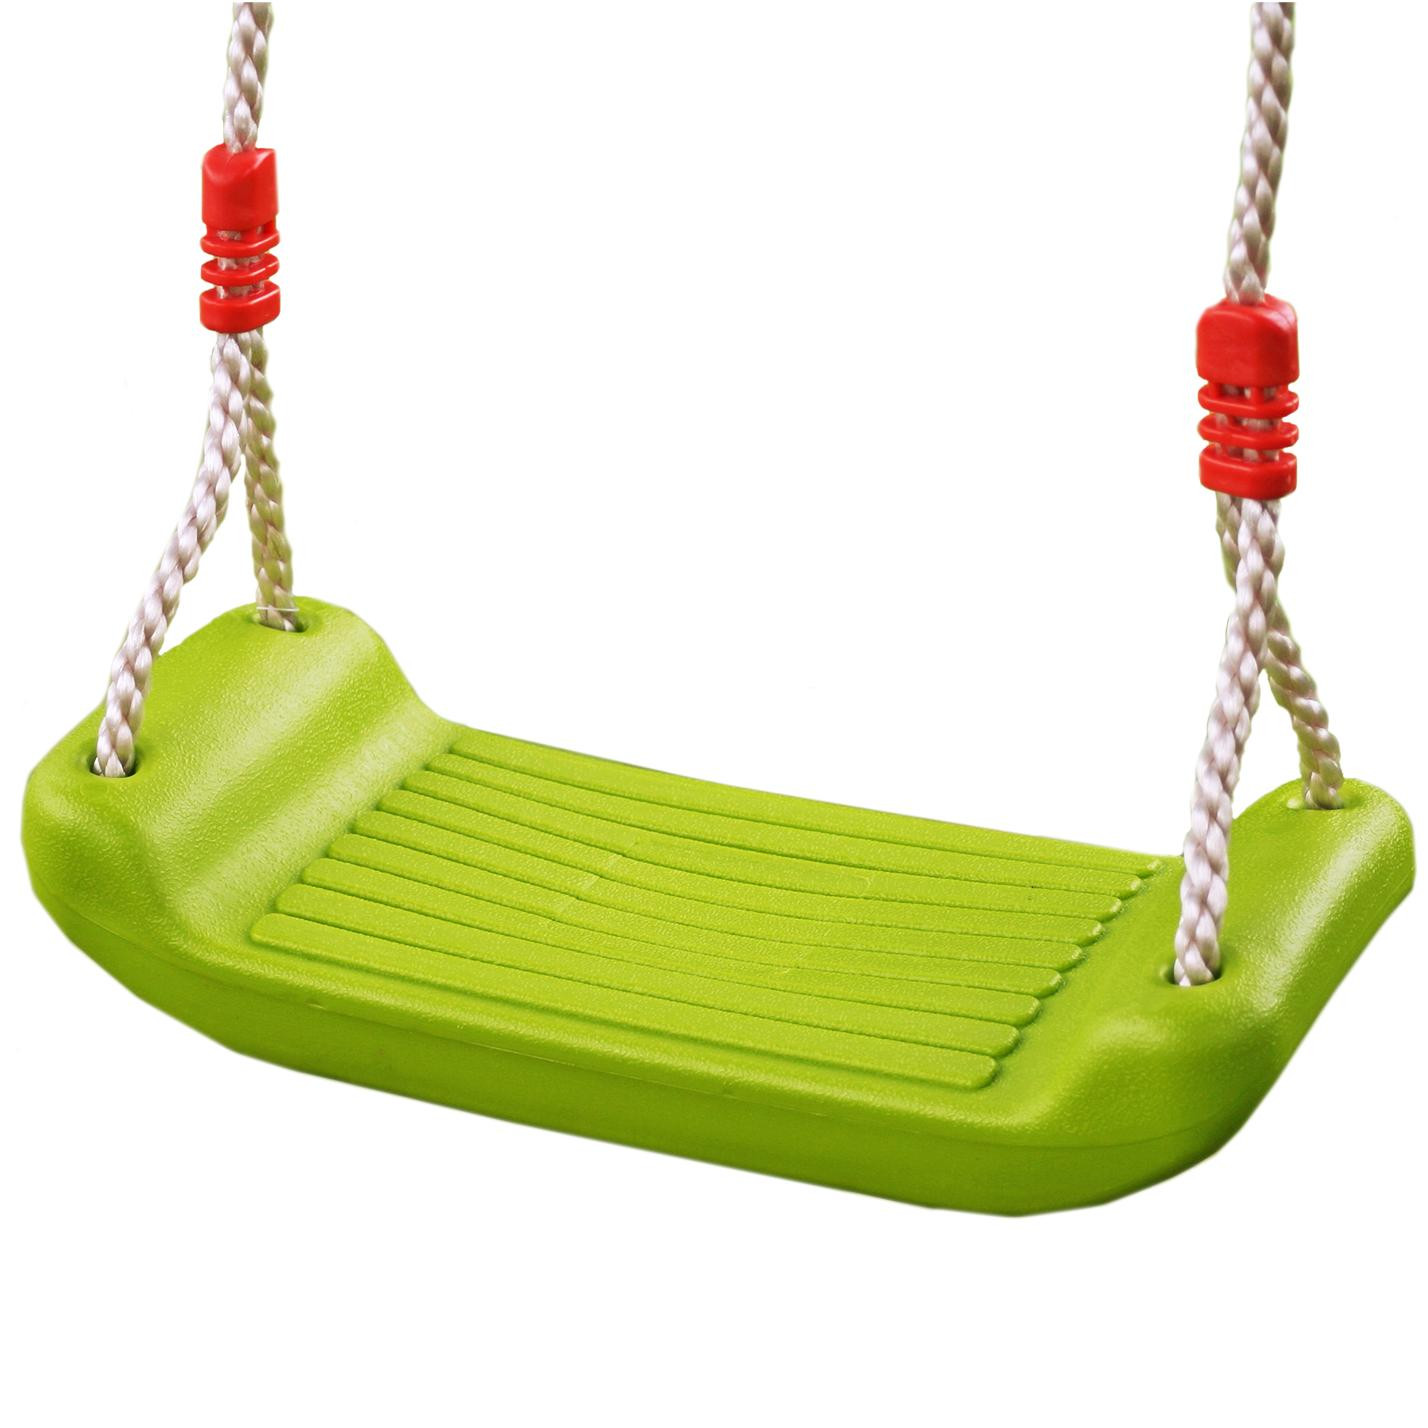 Kids Swing Seat
 NEW Childrens Outdoor Plastic Adjustable Garden Swing